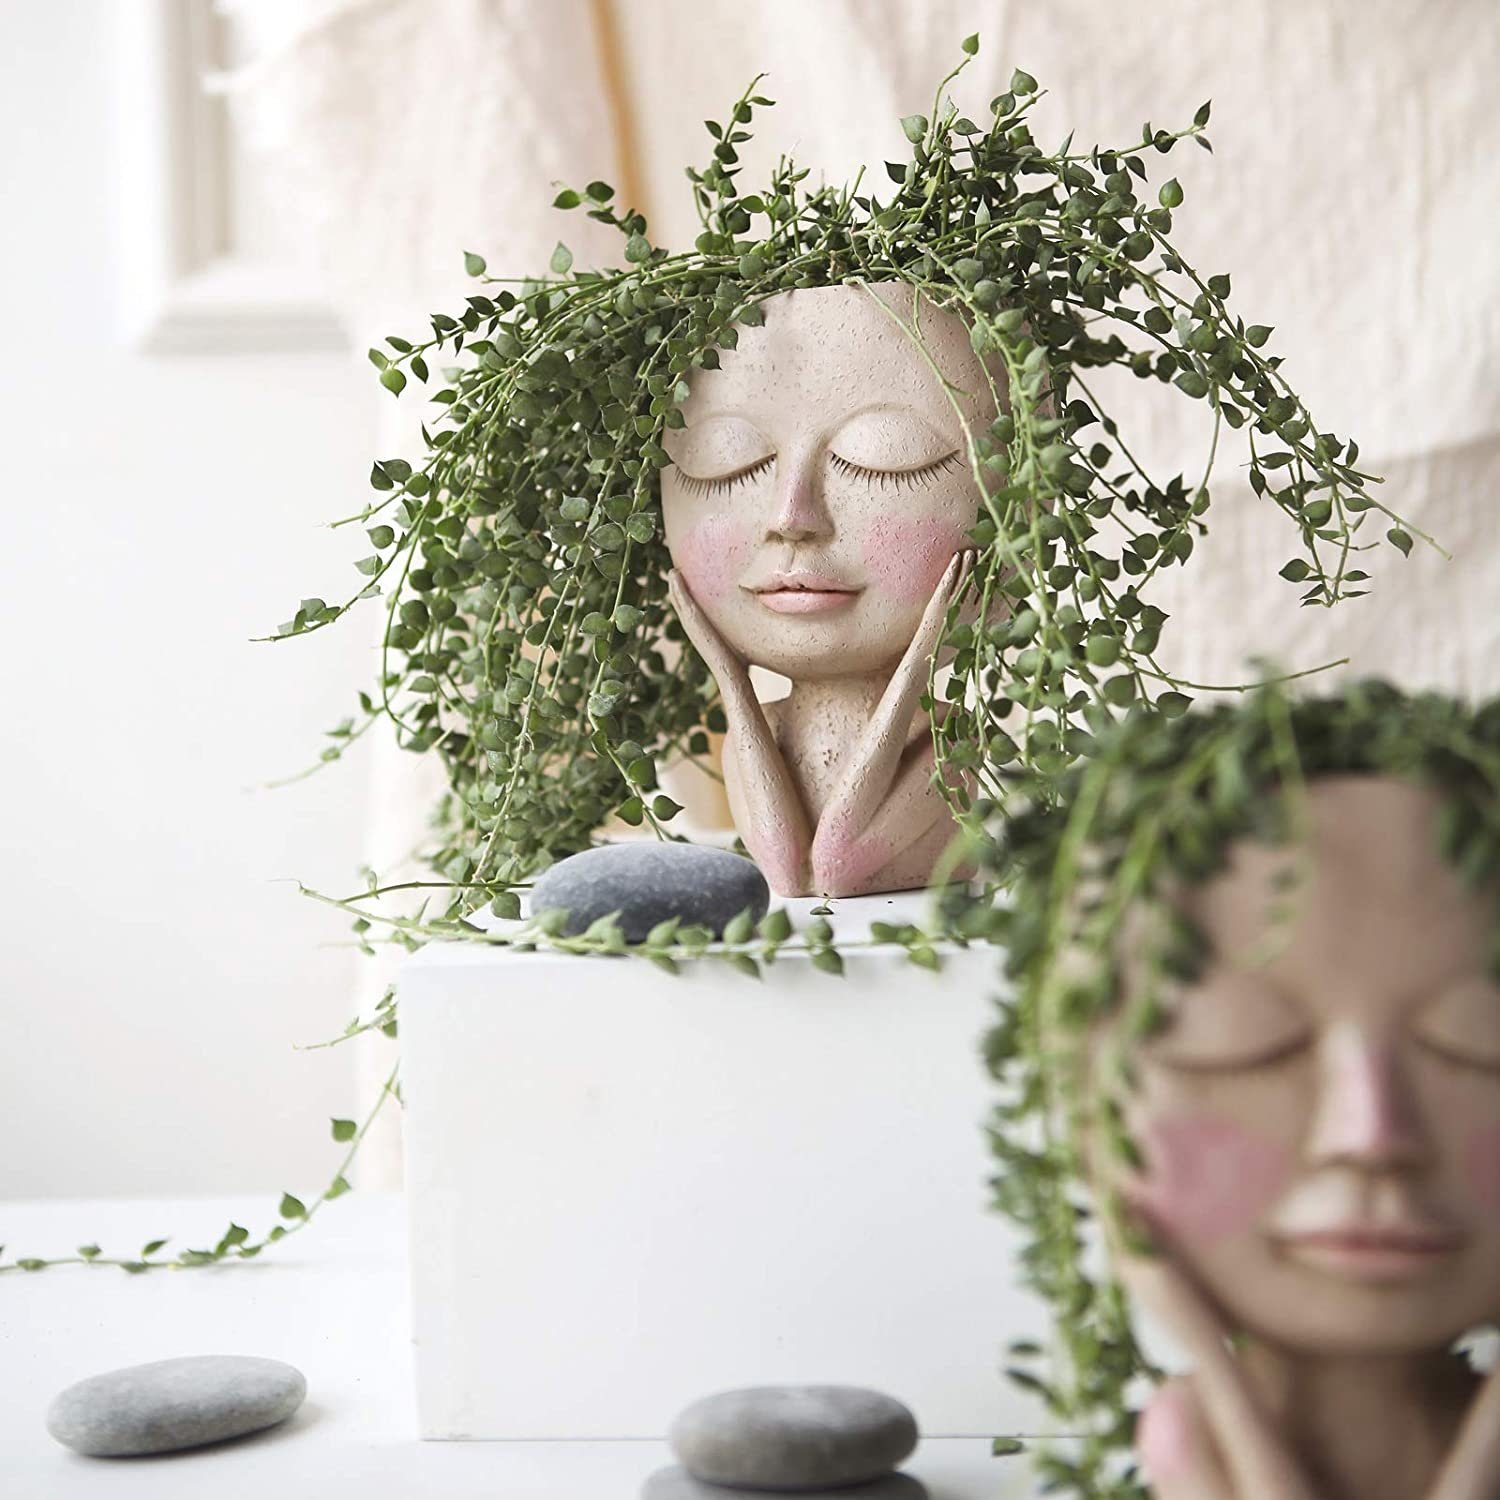 Kopf Hole, Blumentopf mit Kopf Blumentöpfe Vase Gesicht,Menschlicher Drainage Design,Blumentöpfe Menschlicher mit menschlicher Gesicht Design Gesicht,kreative XDeer